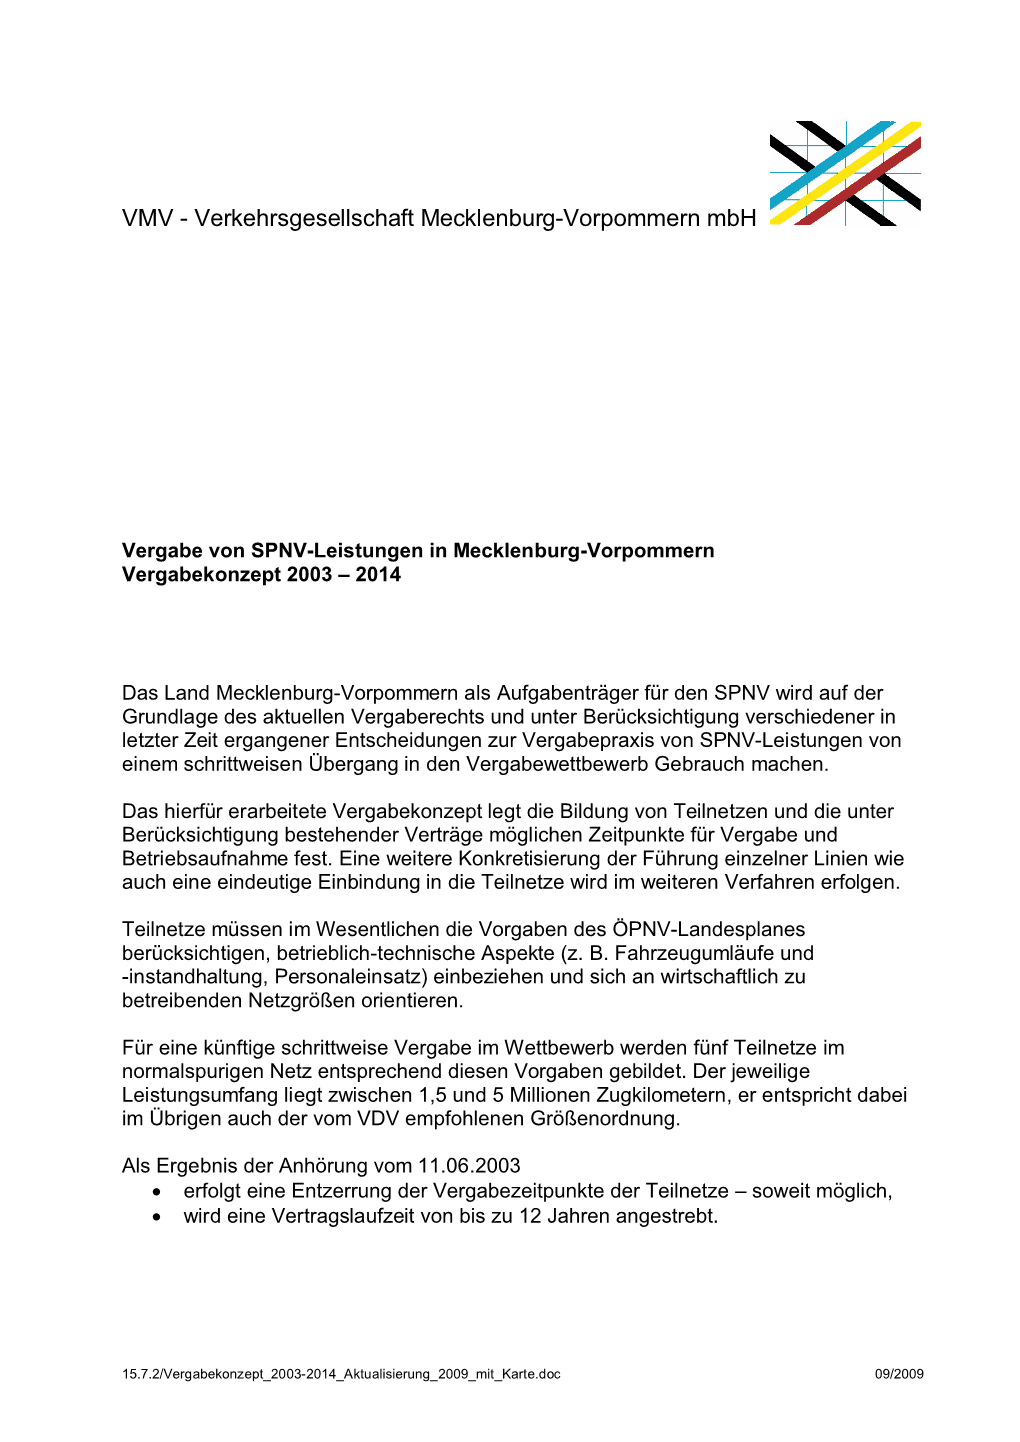 VMV - Verkehrsgesellschaft Mecklenburg-Vorpommern Mbh